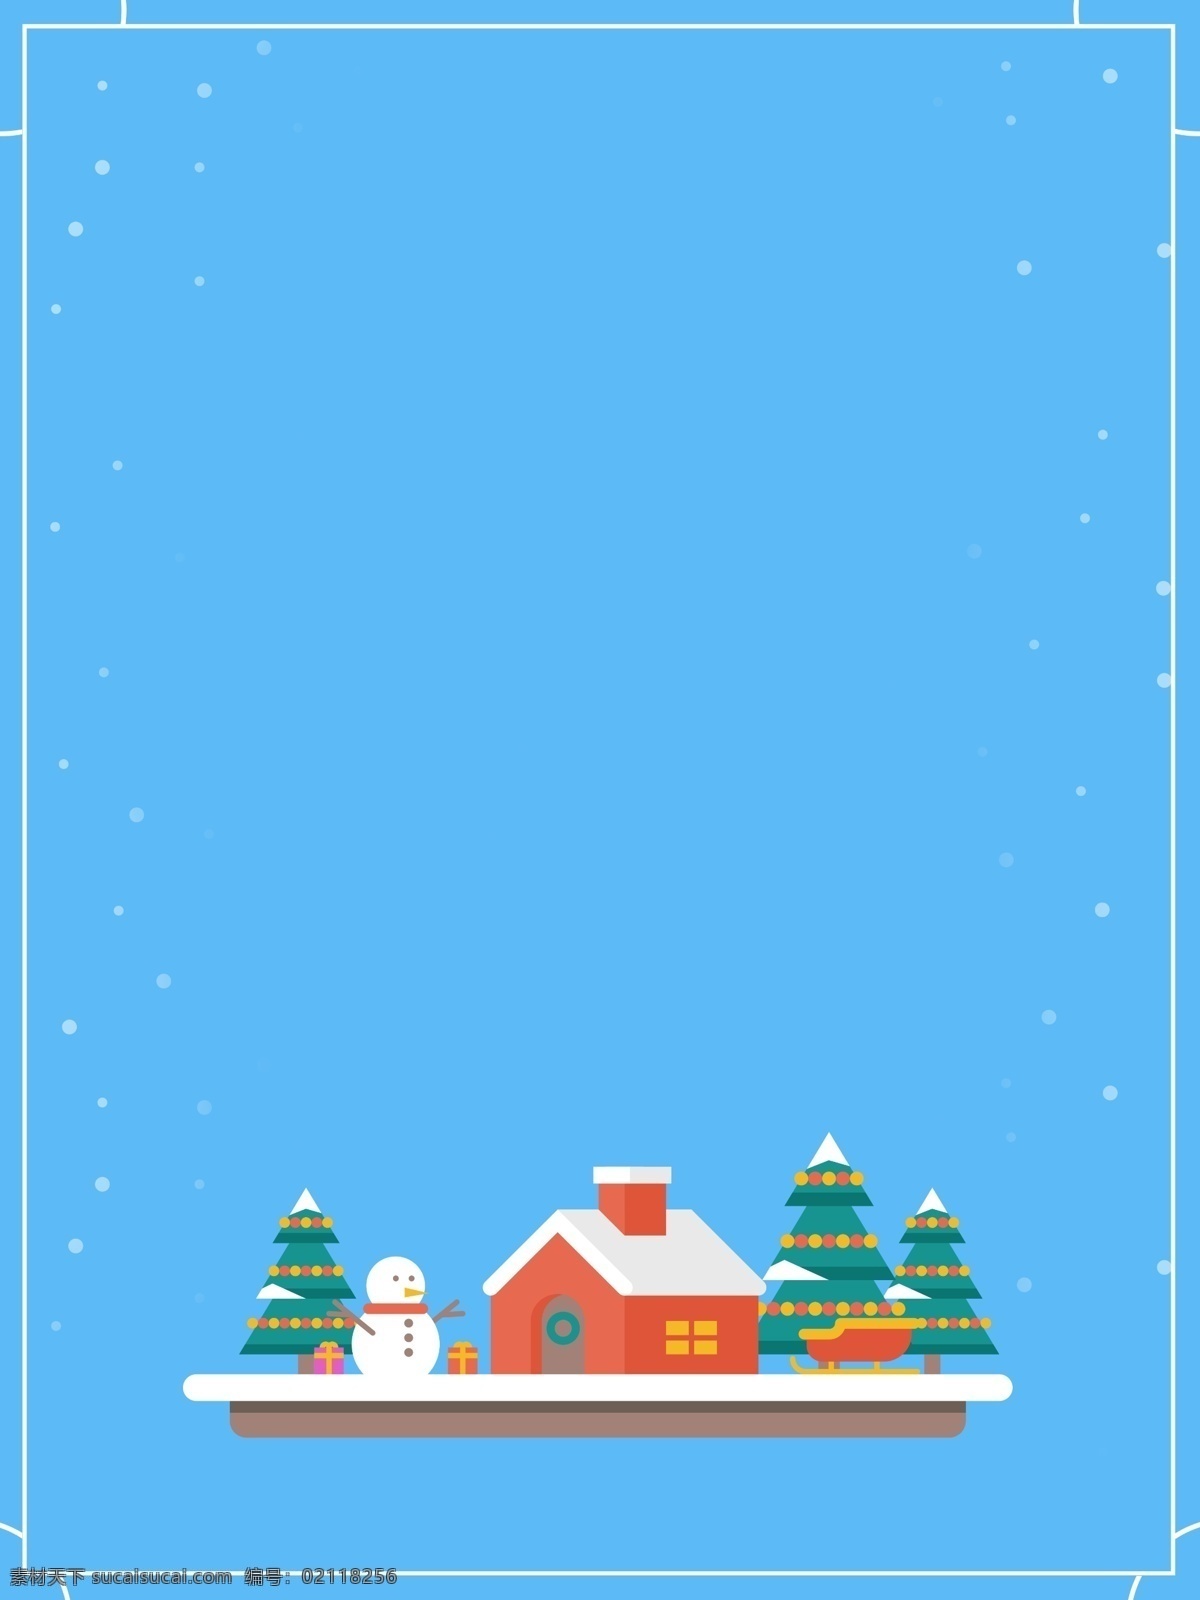 蓝色 冬季 卡通 雪人 房子 背景 图 雪地 树林 蓝色背景 边框 广告背景 雪屋 下雪 psd背景 冬季剃度 冬天素材 暖冬背景